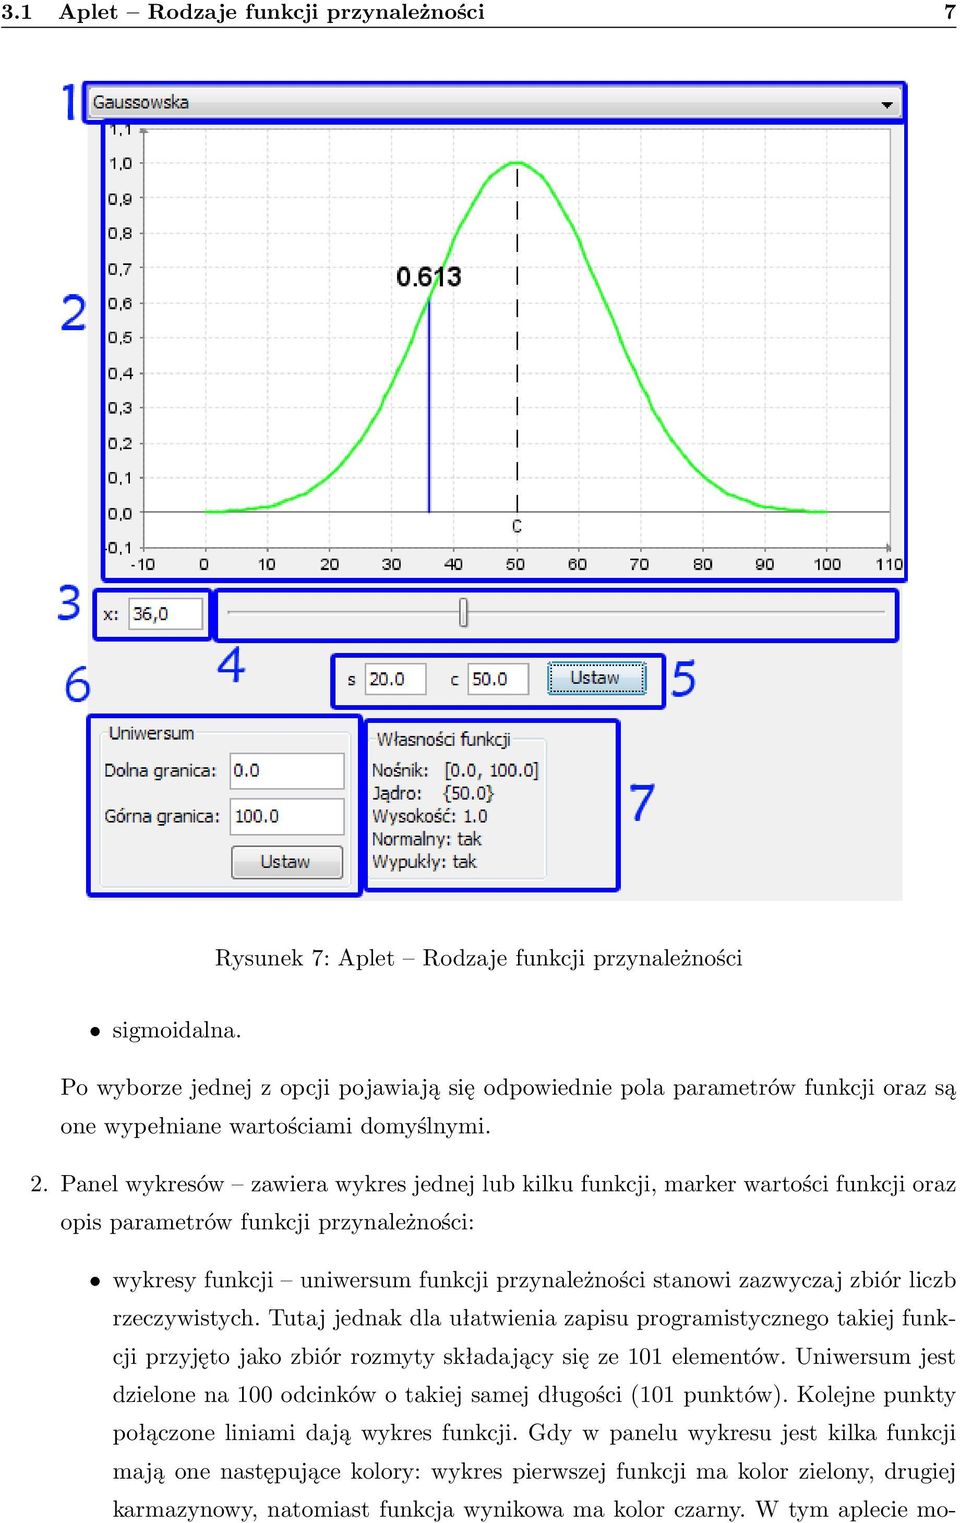 Panel wykresów zawiera wykres jednej lub kilku funkcji, marker wartości funkcji oraz opis parametrów funkcji przynależności: wykresy funkcji uniwersum funkcji przynależności stanowi zazwyczaj zbiór